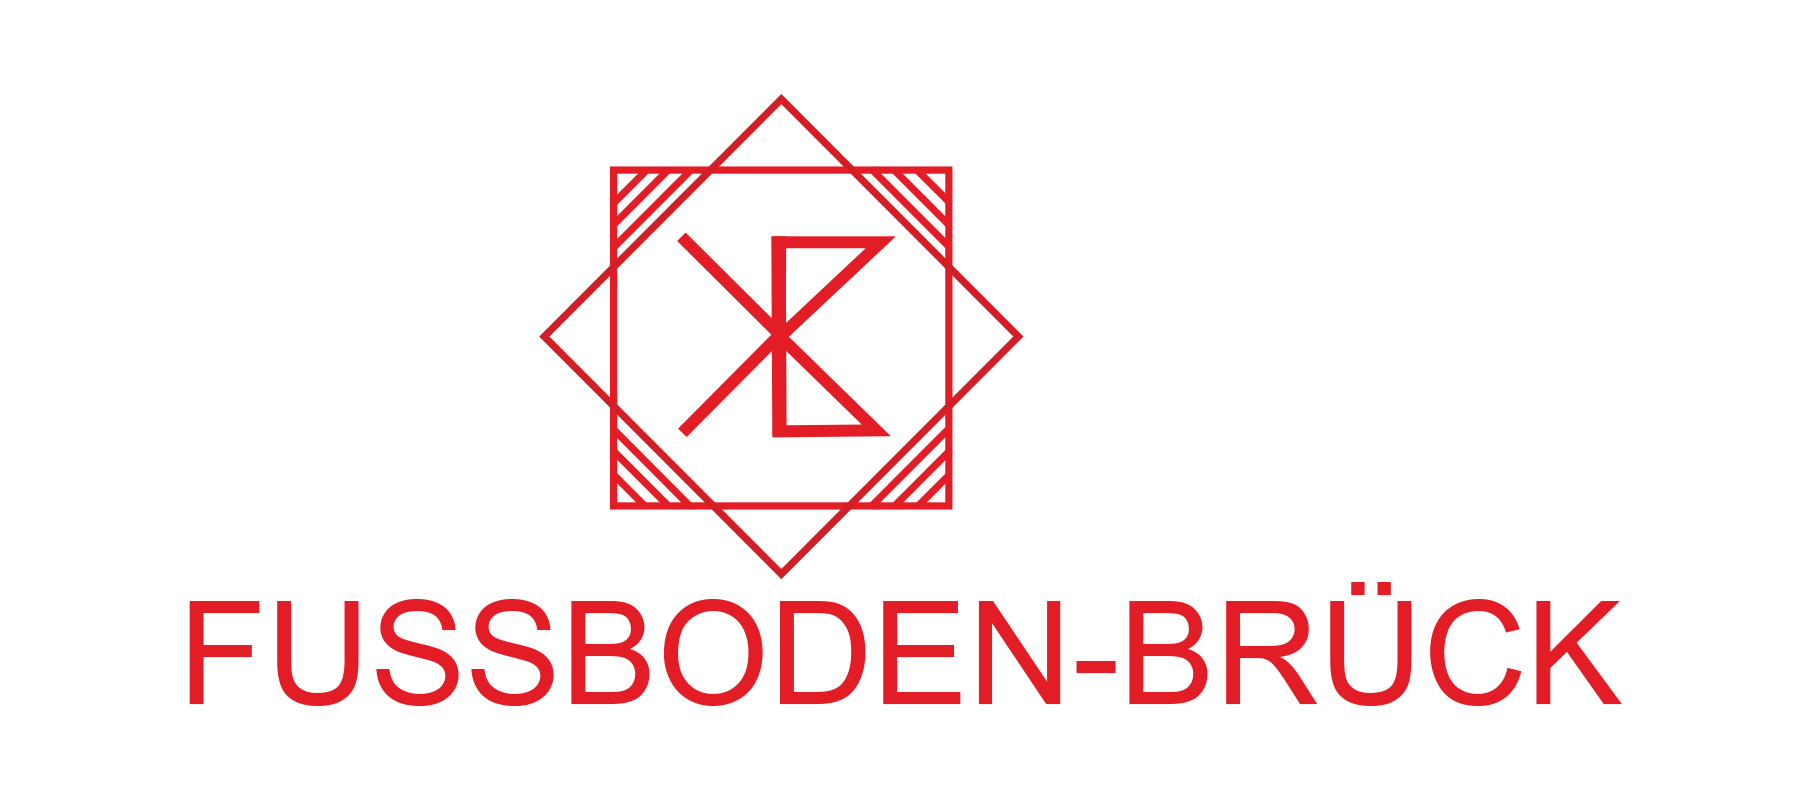 FussbodenBrueck_Logo